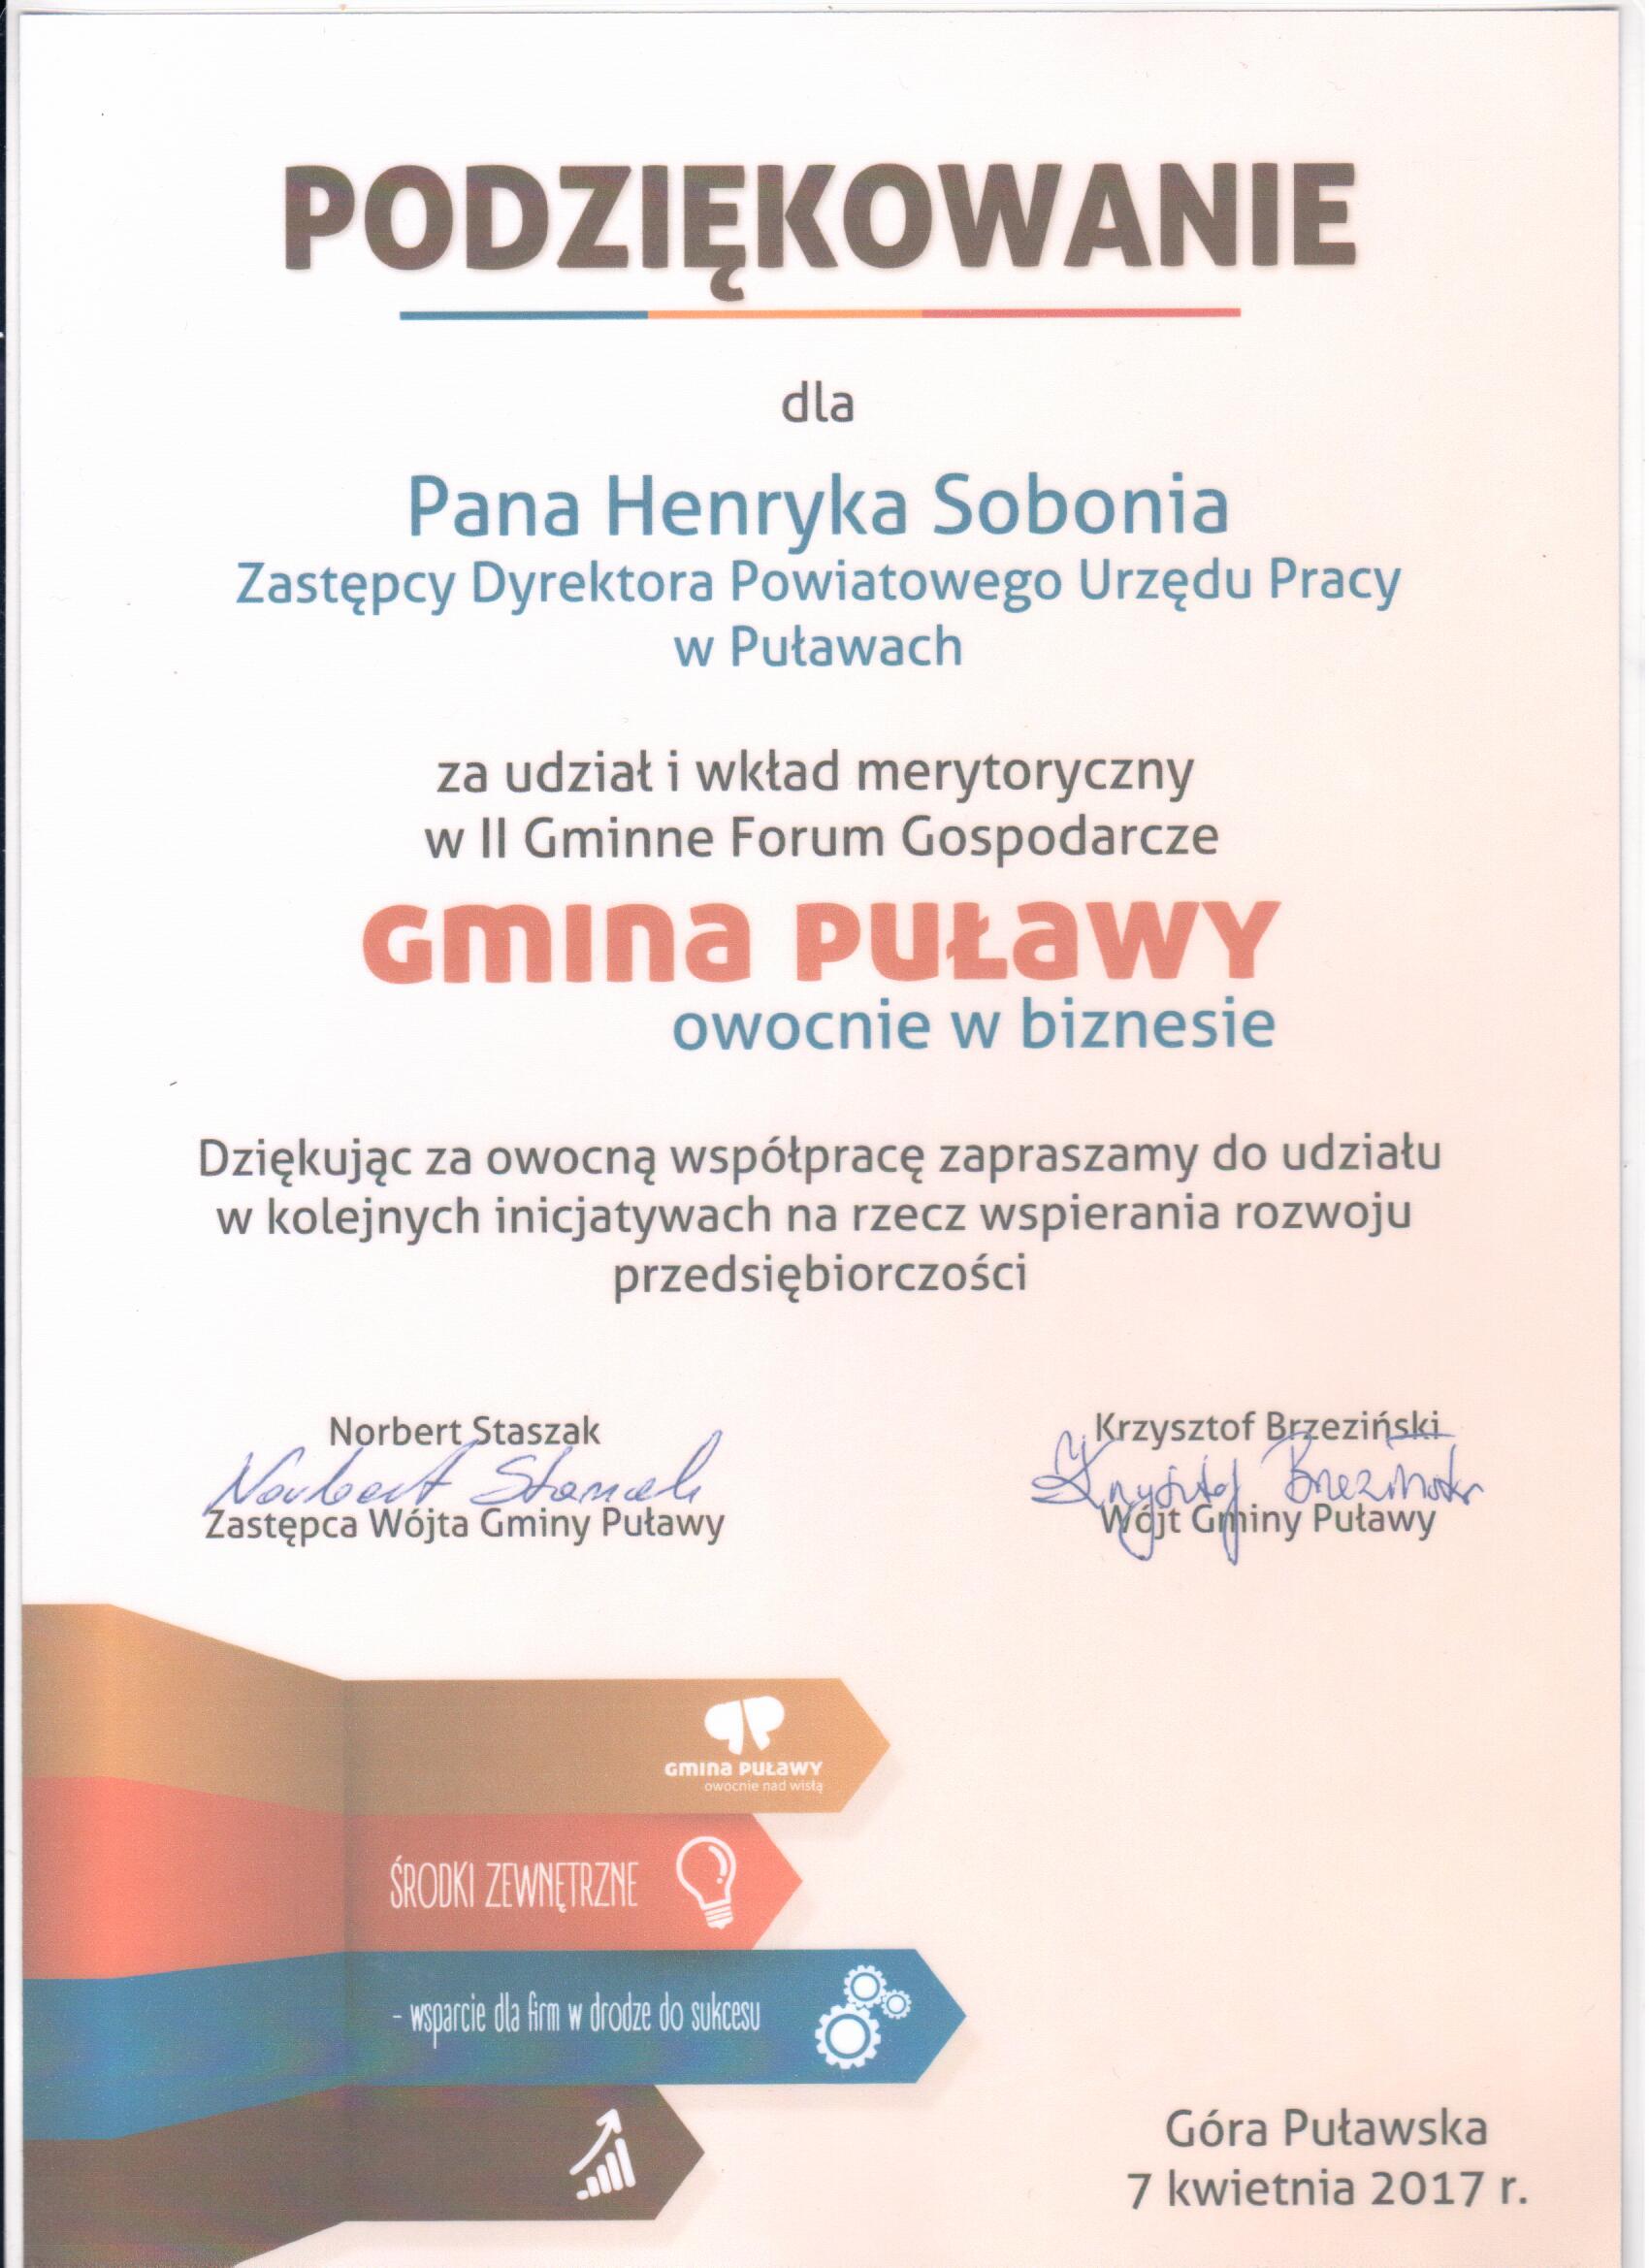 Podziękowanie za udział w II Forum Gospodarczym w Gminie Puławy.